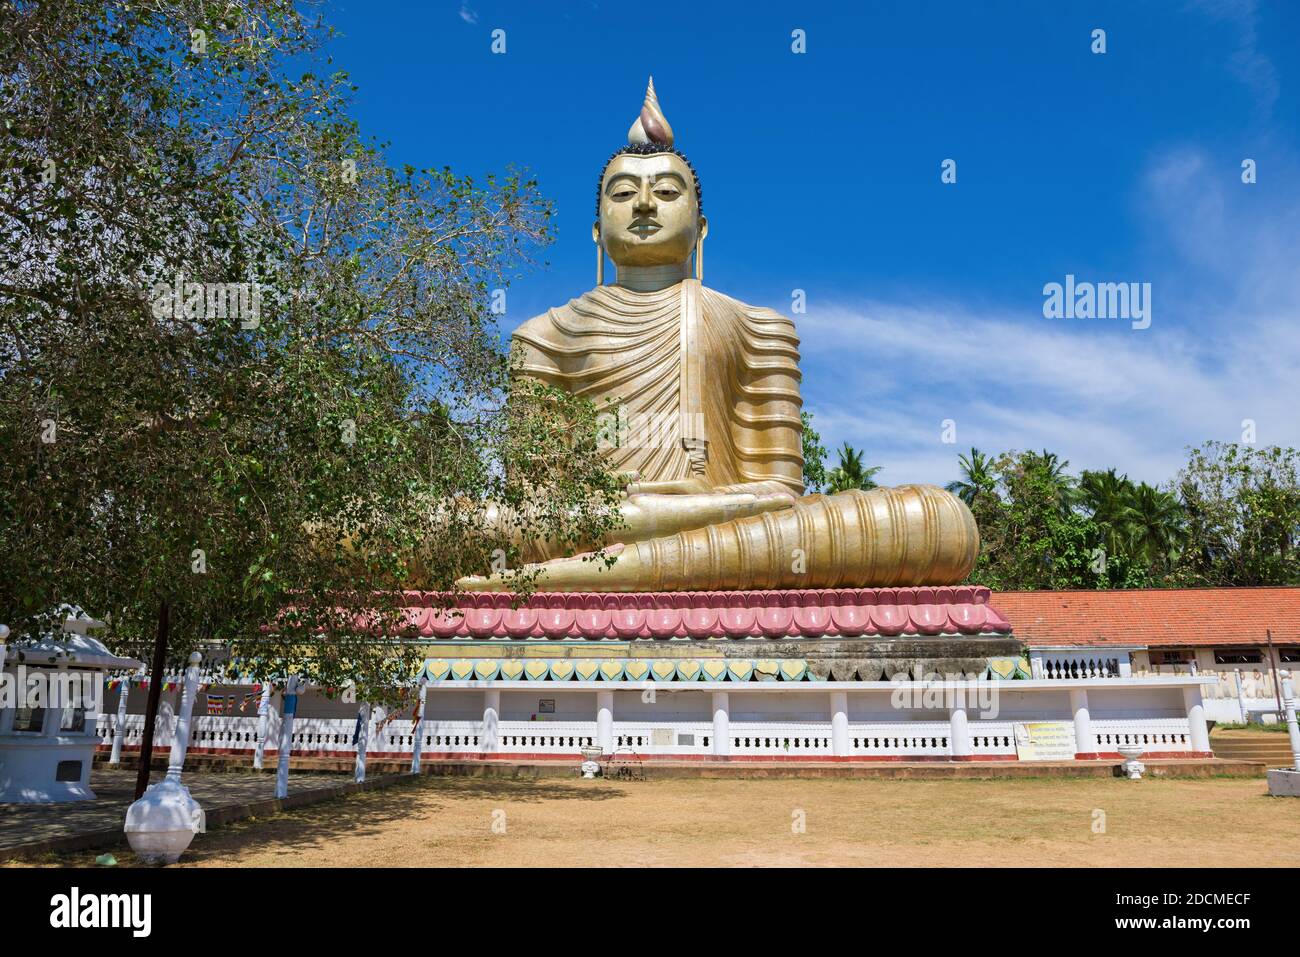 DIKWELLA, SRI LANKA - 17 FEBBRAIO 2020: Vista di una scultura gigante del Buddha seduto (Buddha con una casa sulla schiena) in una giornata di sole. Tempio buddista Foto Stock